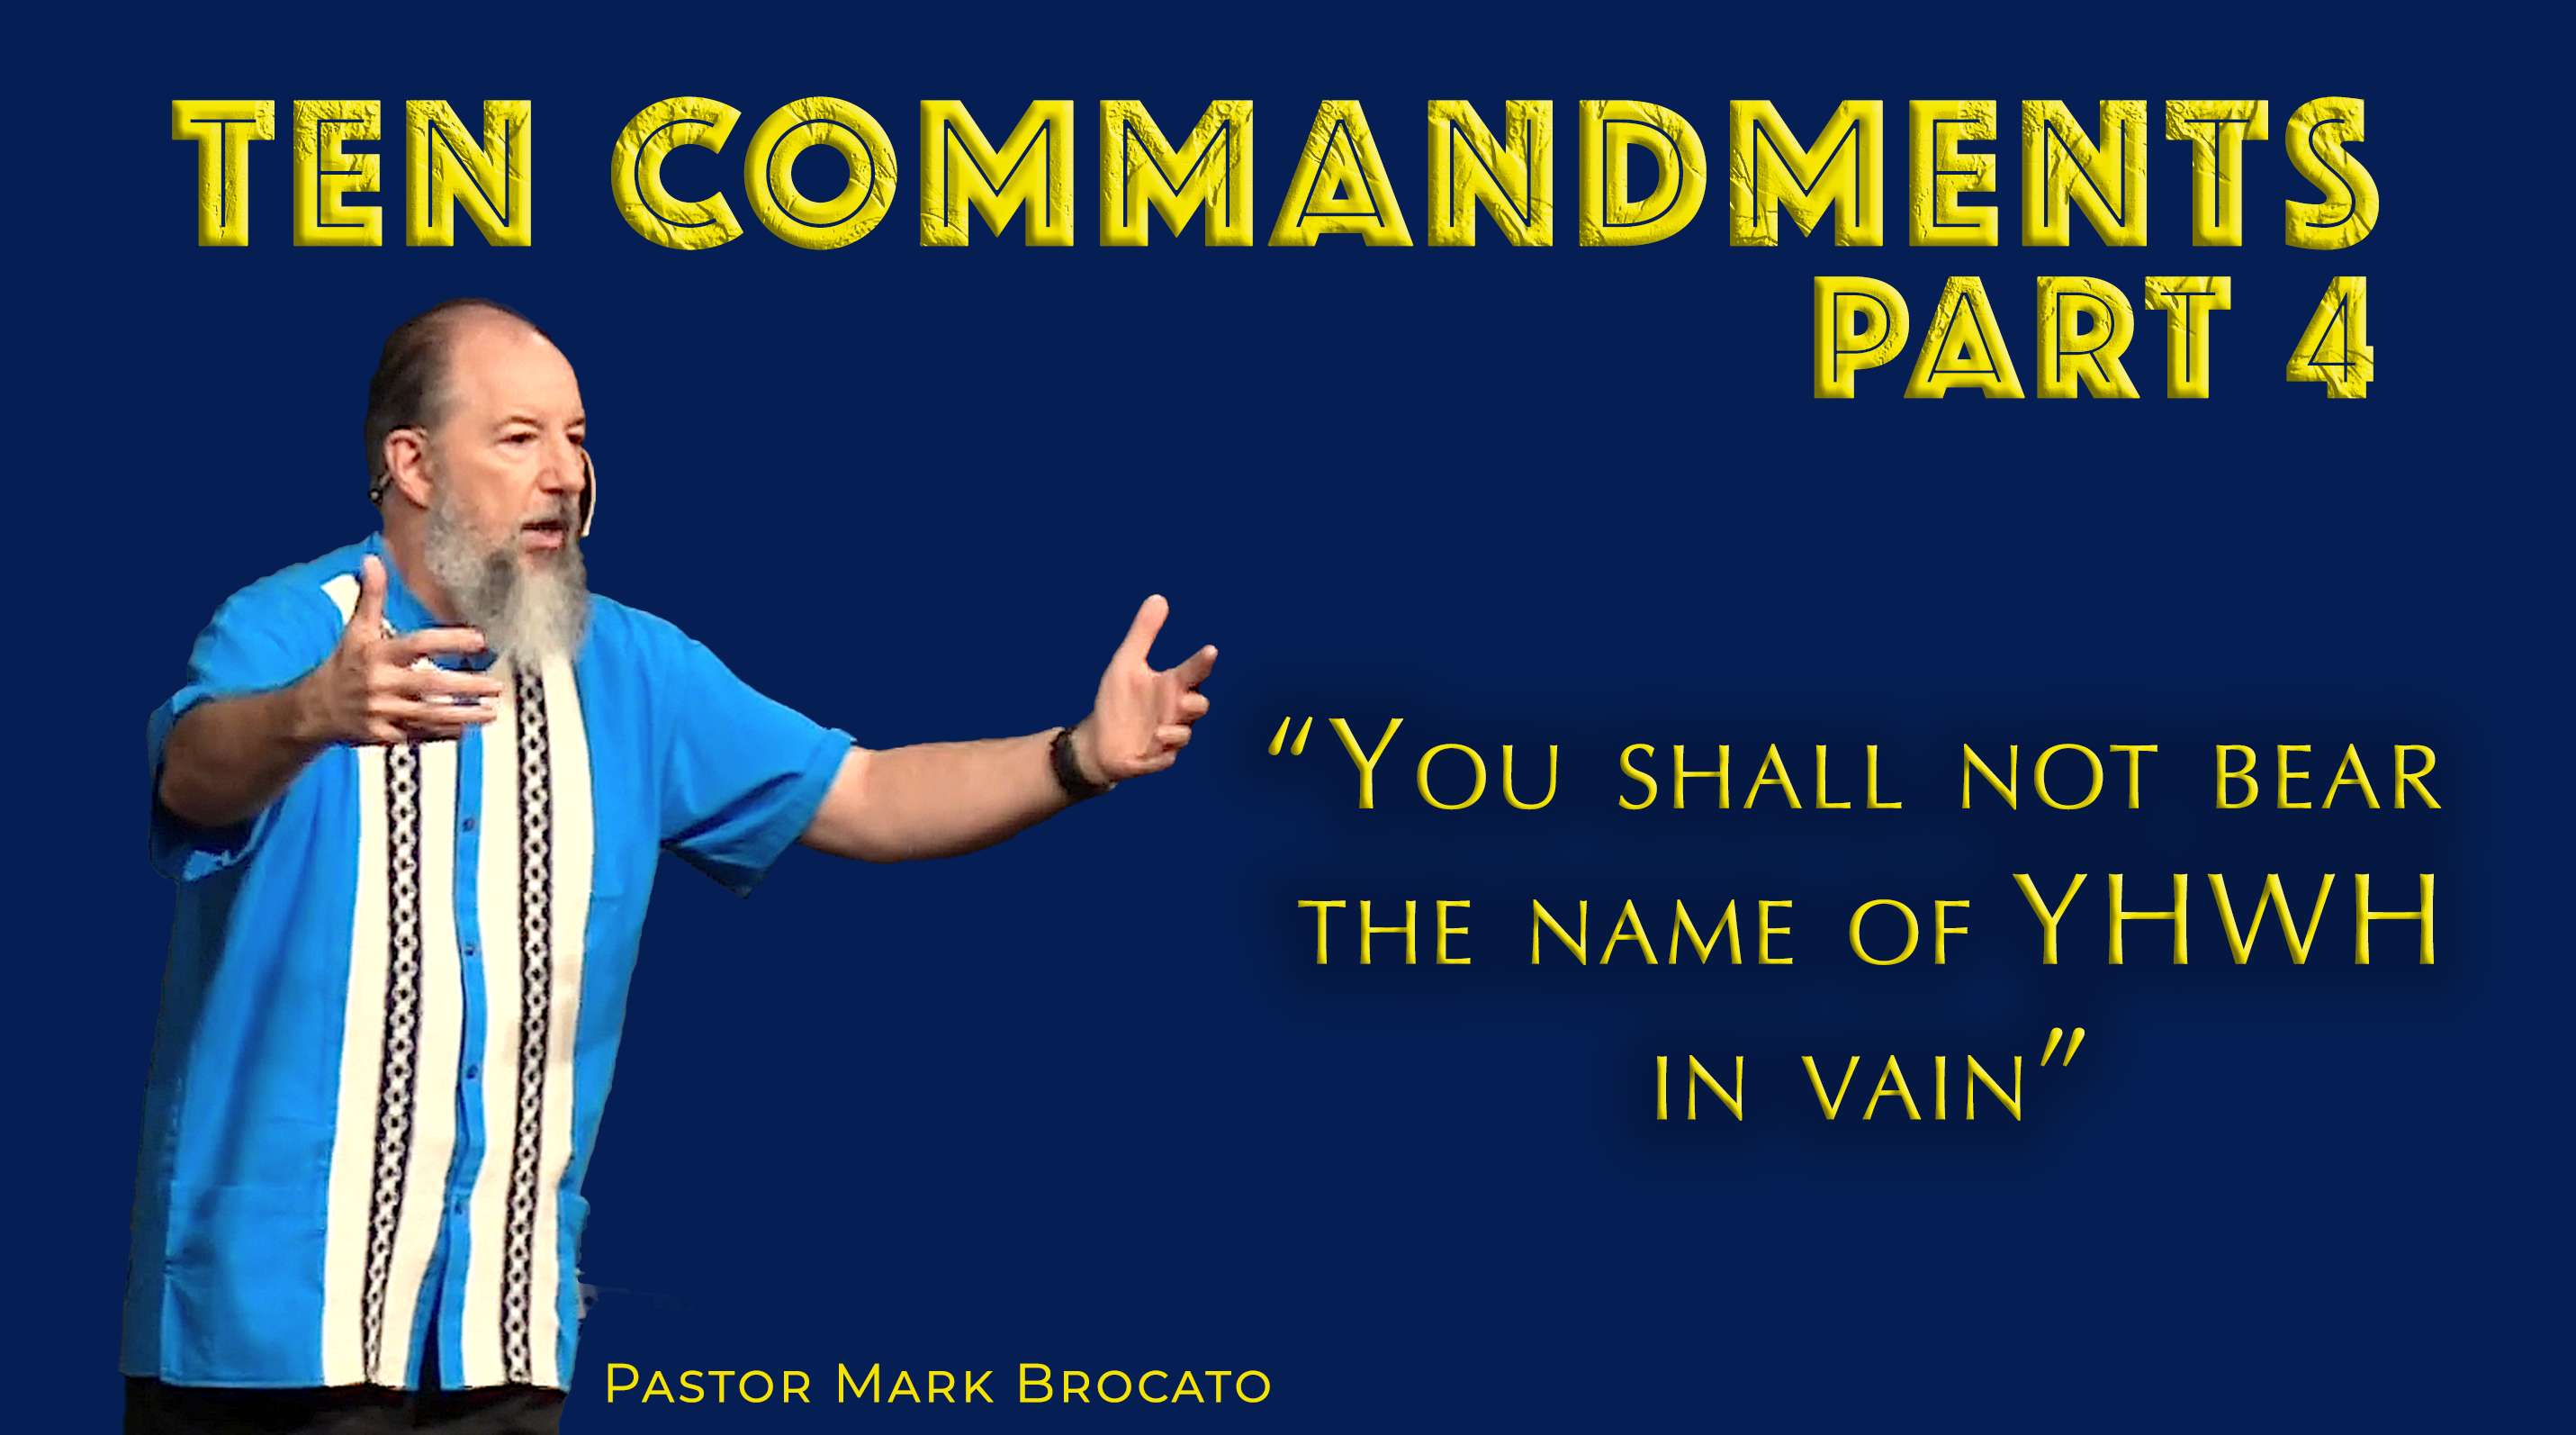 Commandment III